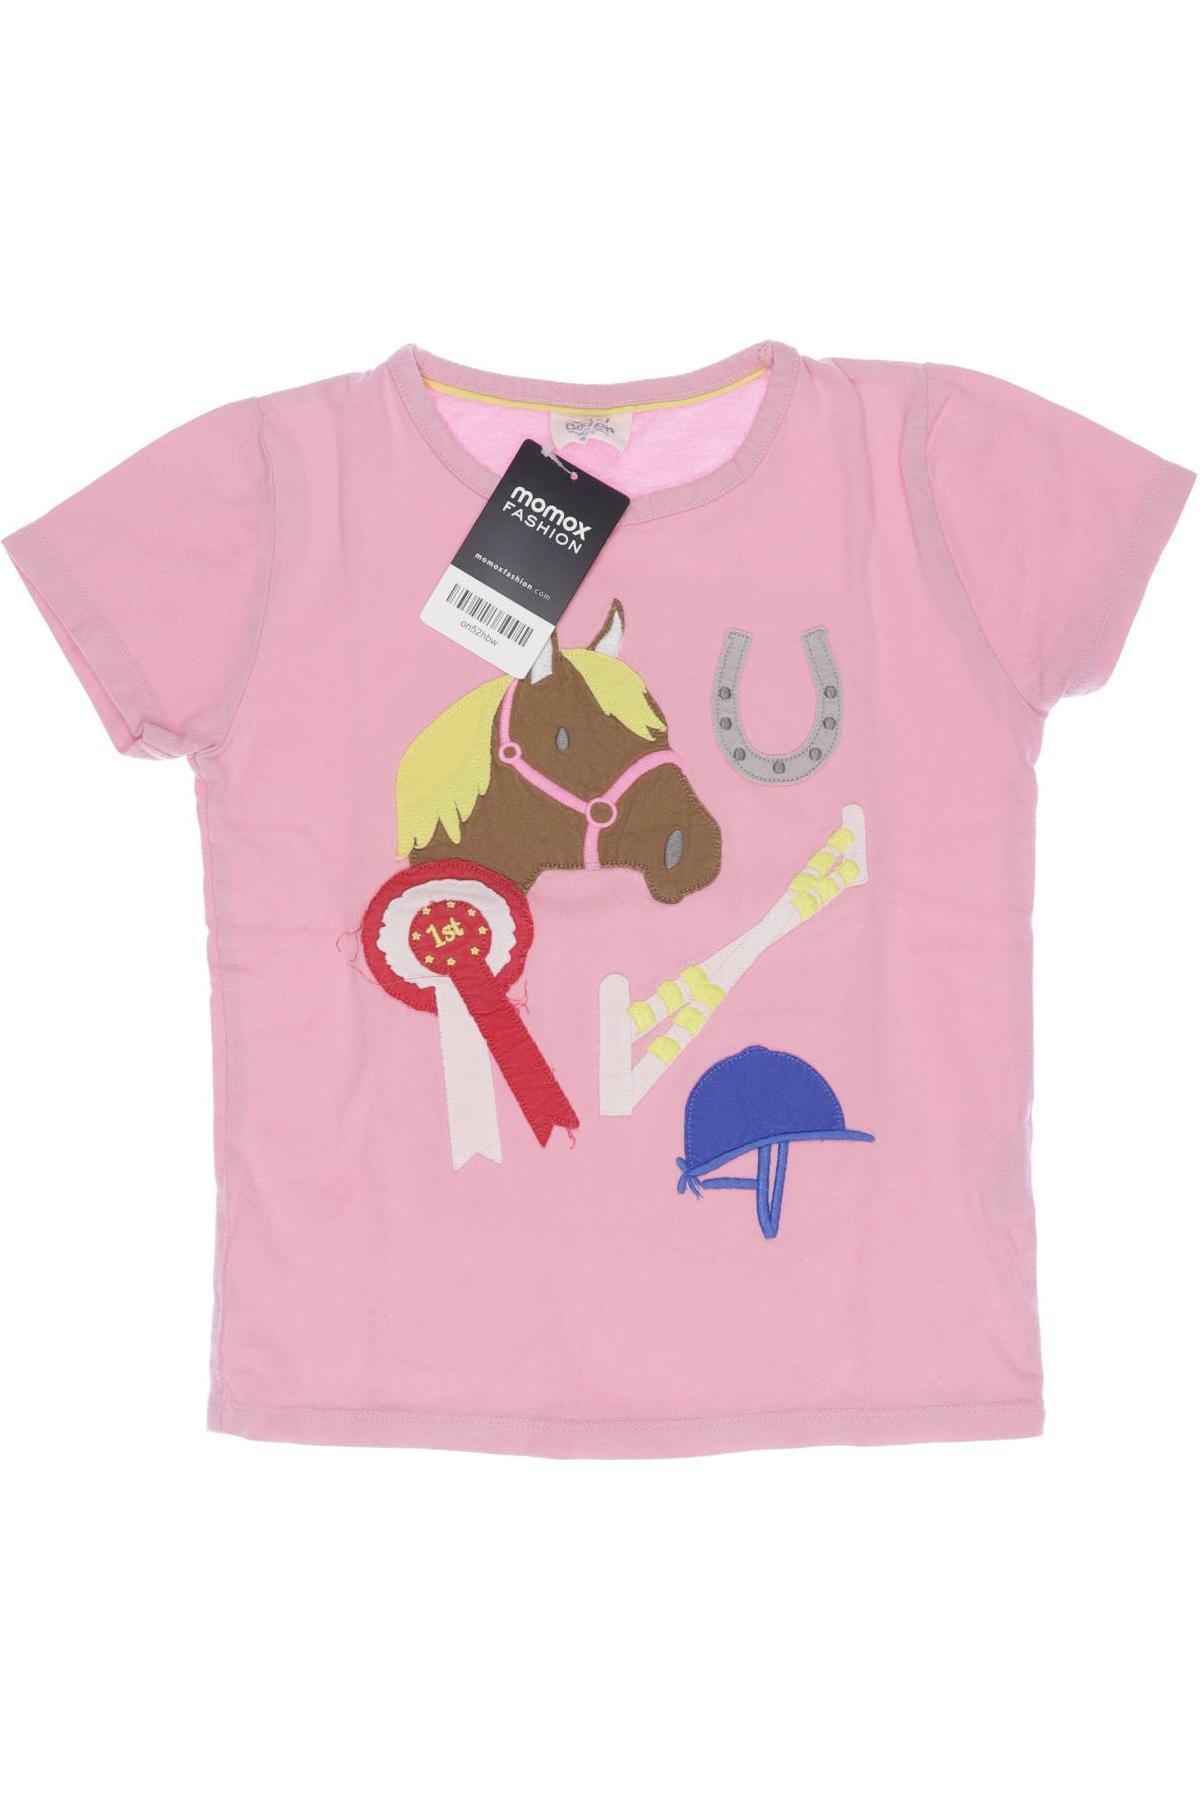 Mini Boden Mädchen T-Shirt, pink von Mini Boden